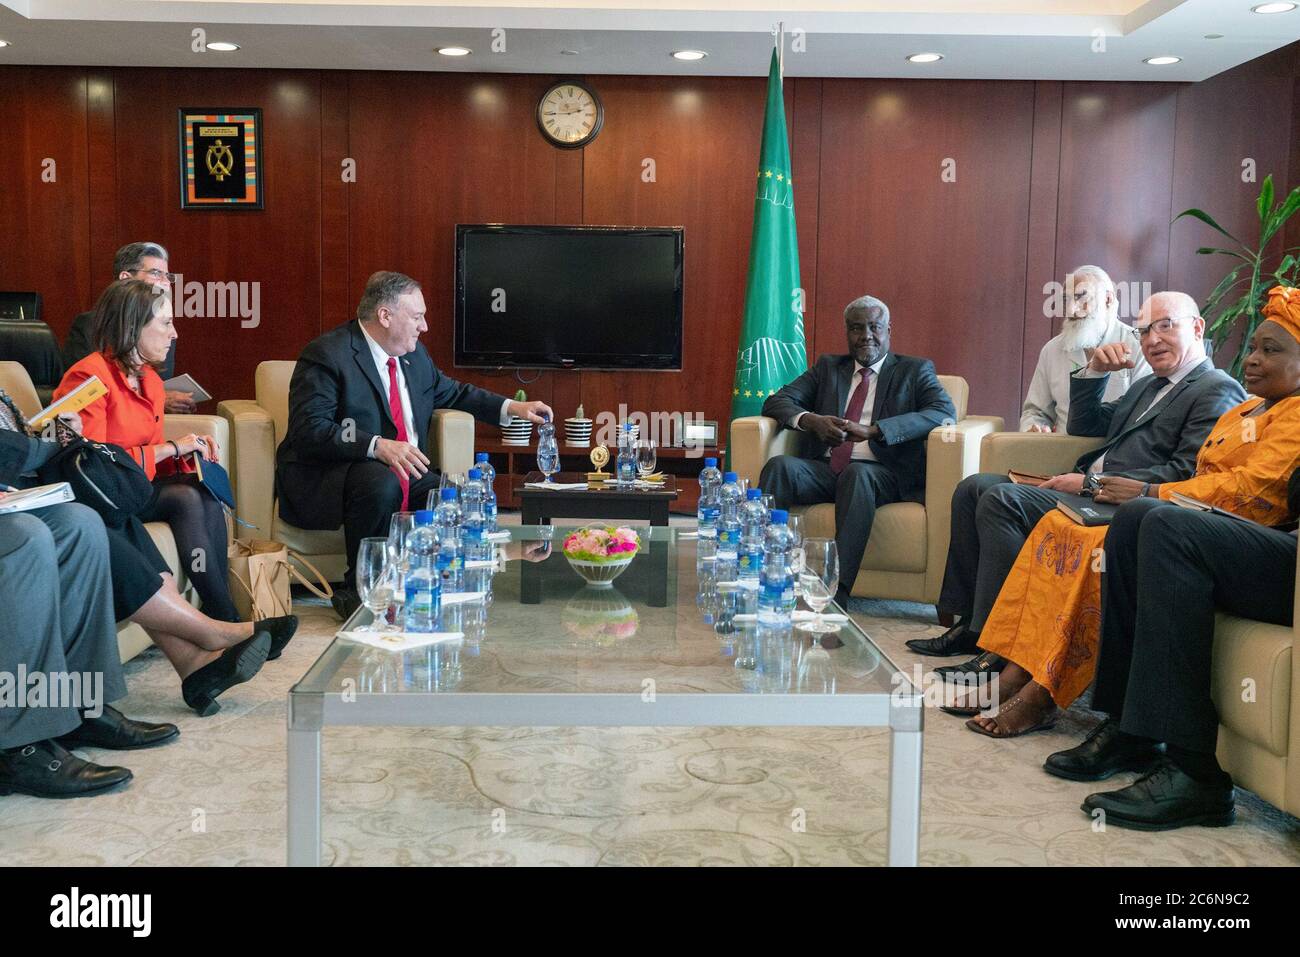 Le secrétaire d'État Mike Pompeo rencontre la présidente de la Commission de l'Union africaine Moussa Faki Mahamat à Addis-Abeba (Éthiopie), le 18 février 2020 Banque D'Images